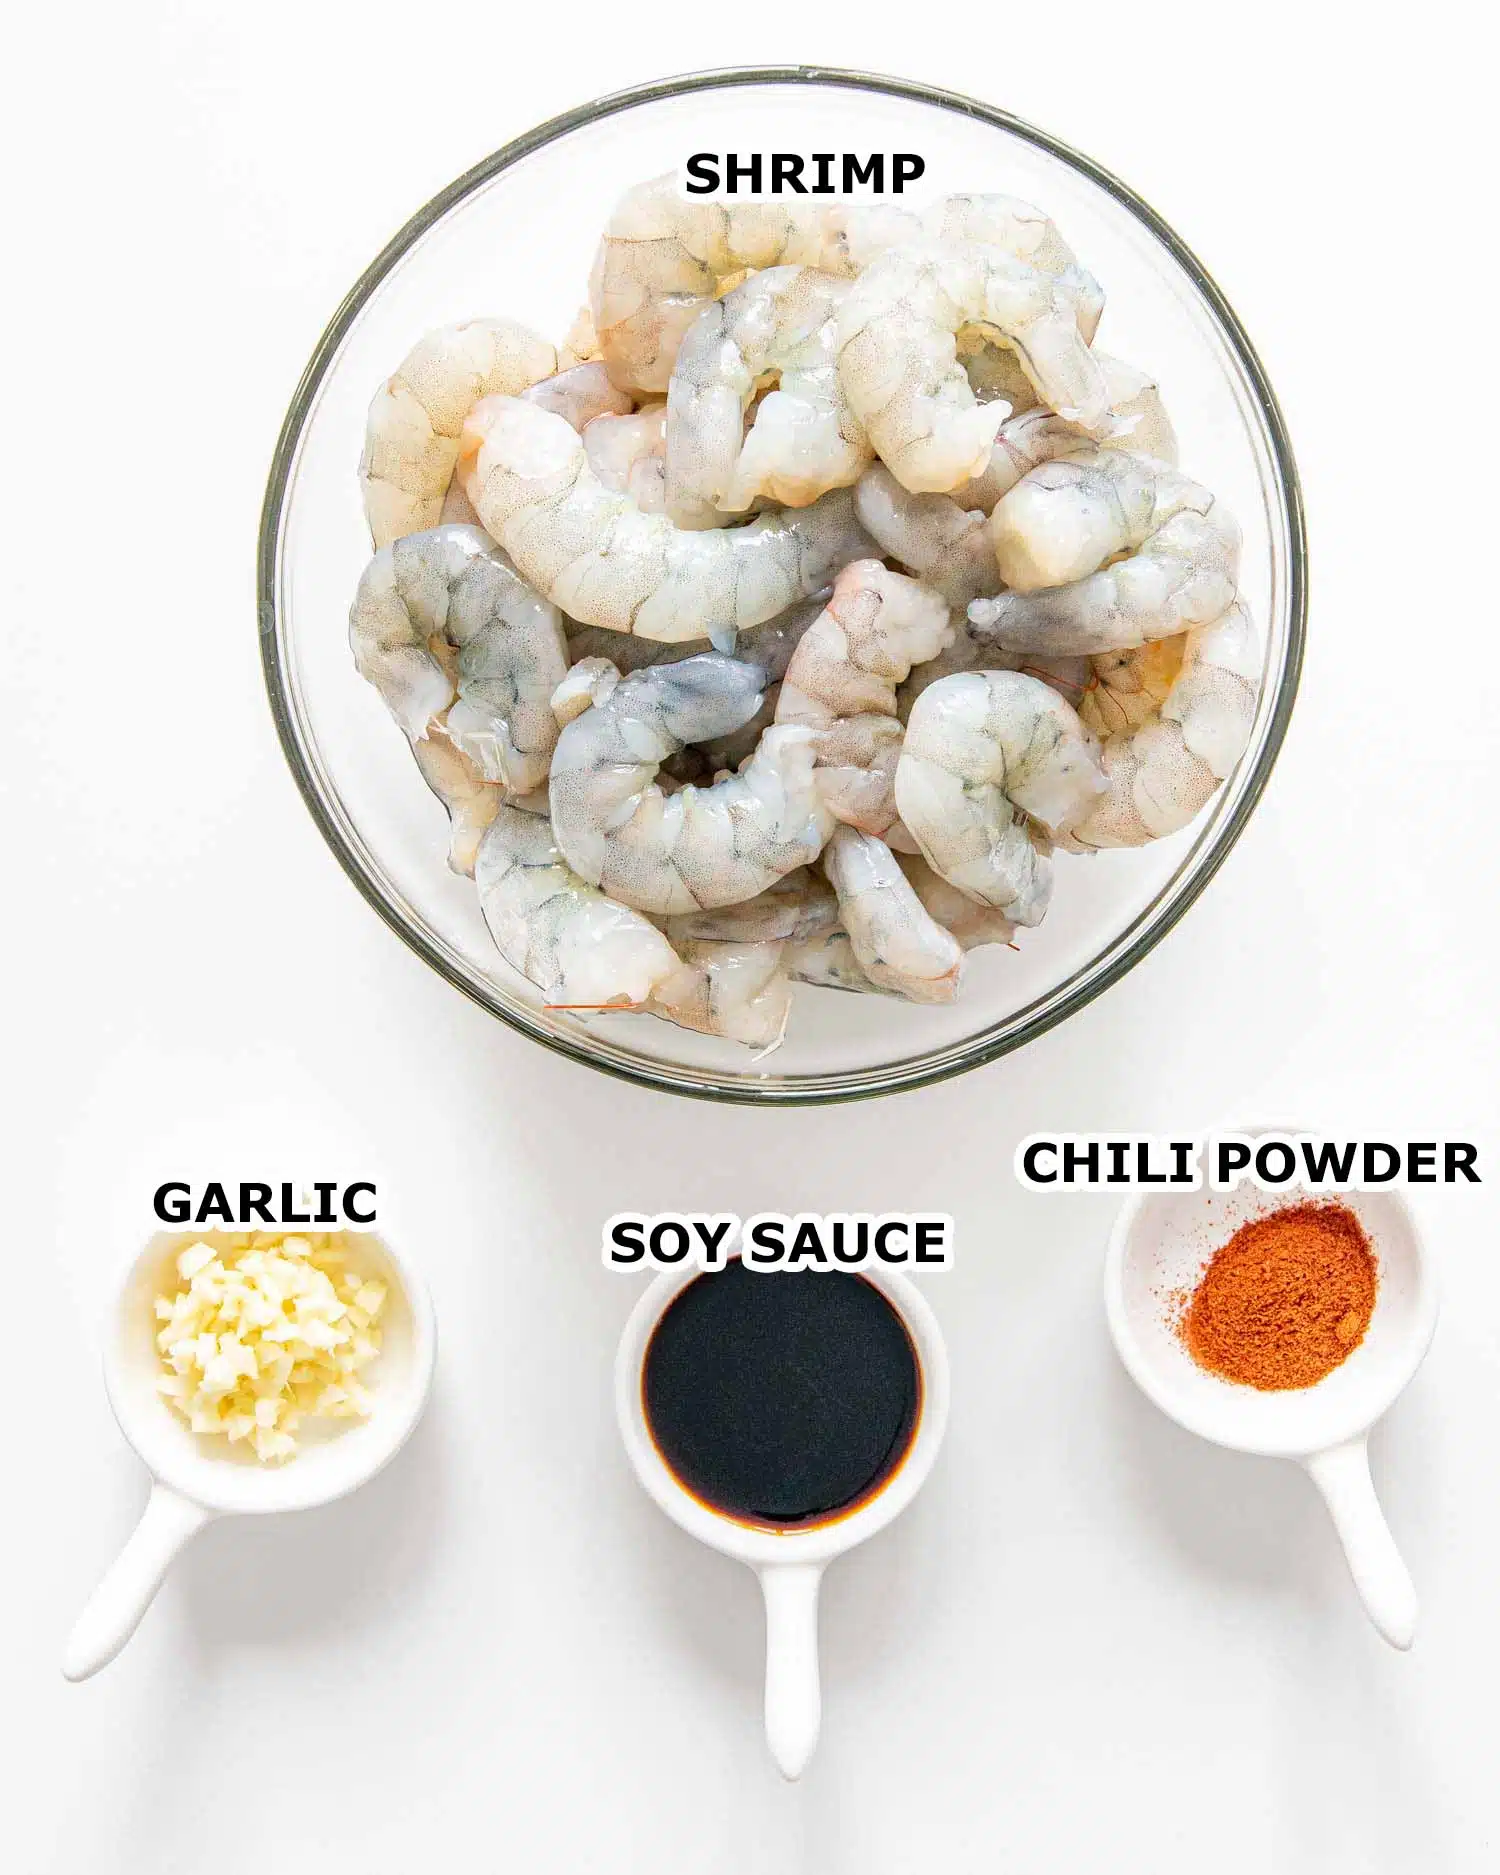 ingredients needed to make asian garlic shrimp.